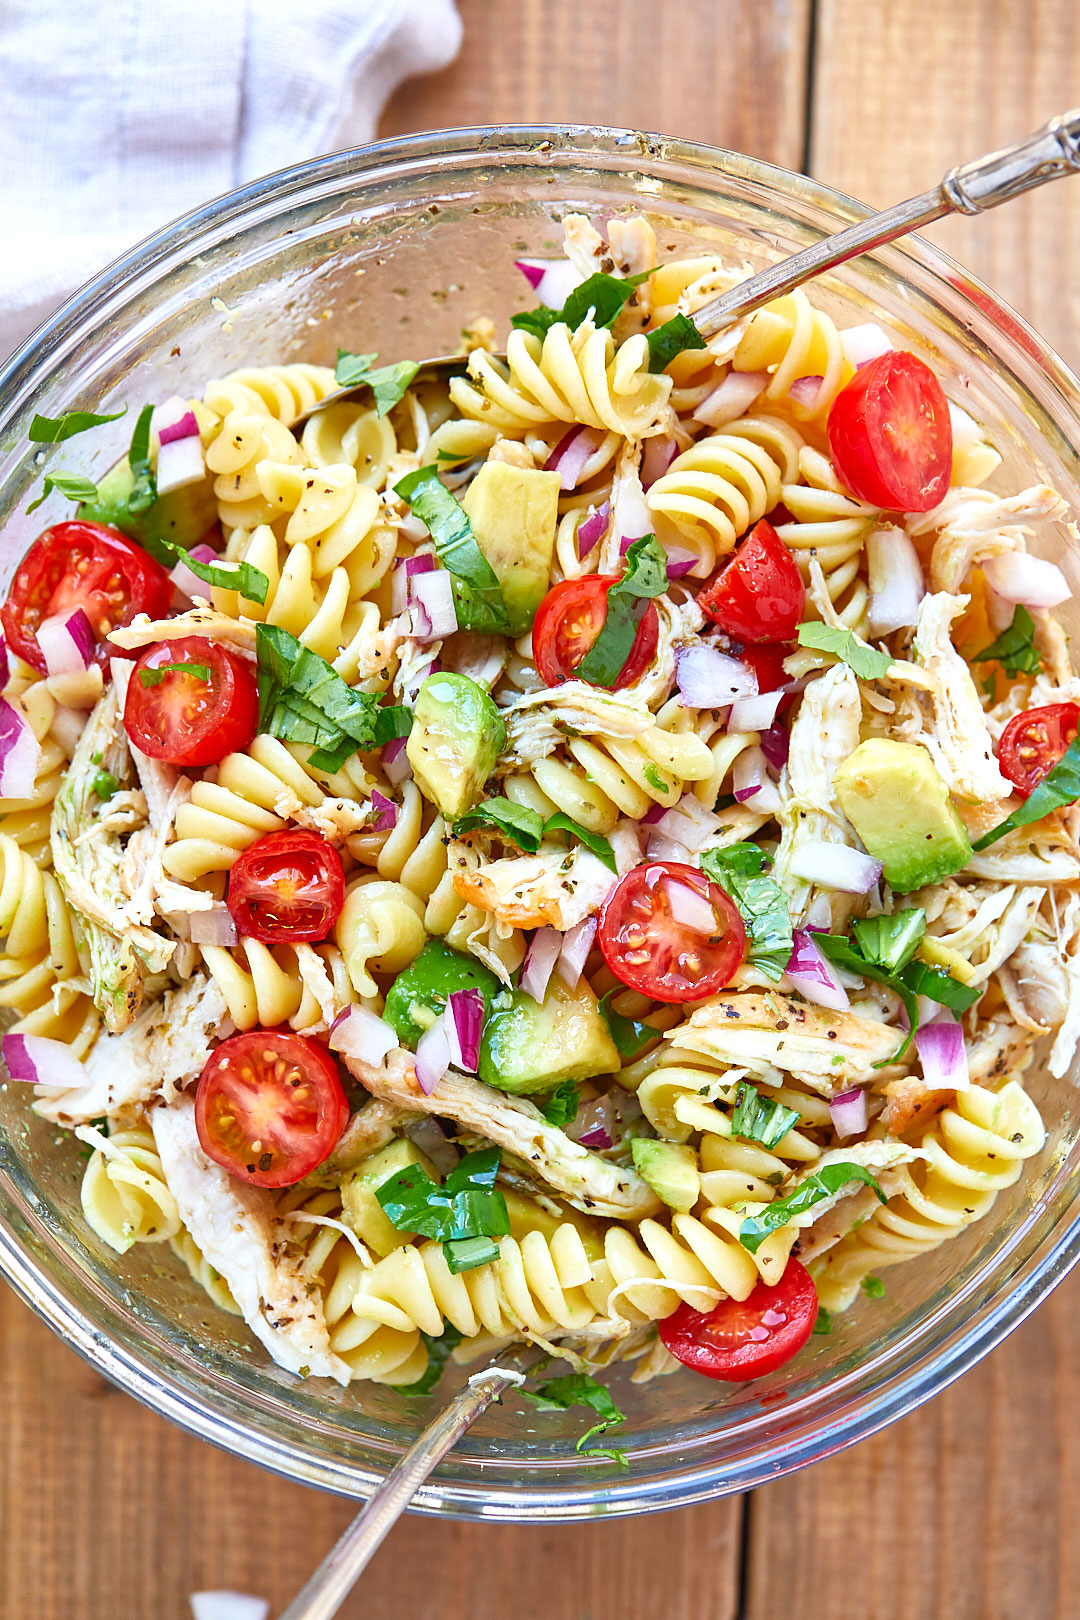 Healthy Chicken Pasta Salad Recipe with Avocado – Chicken Pasta Salad